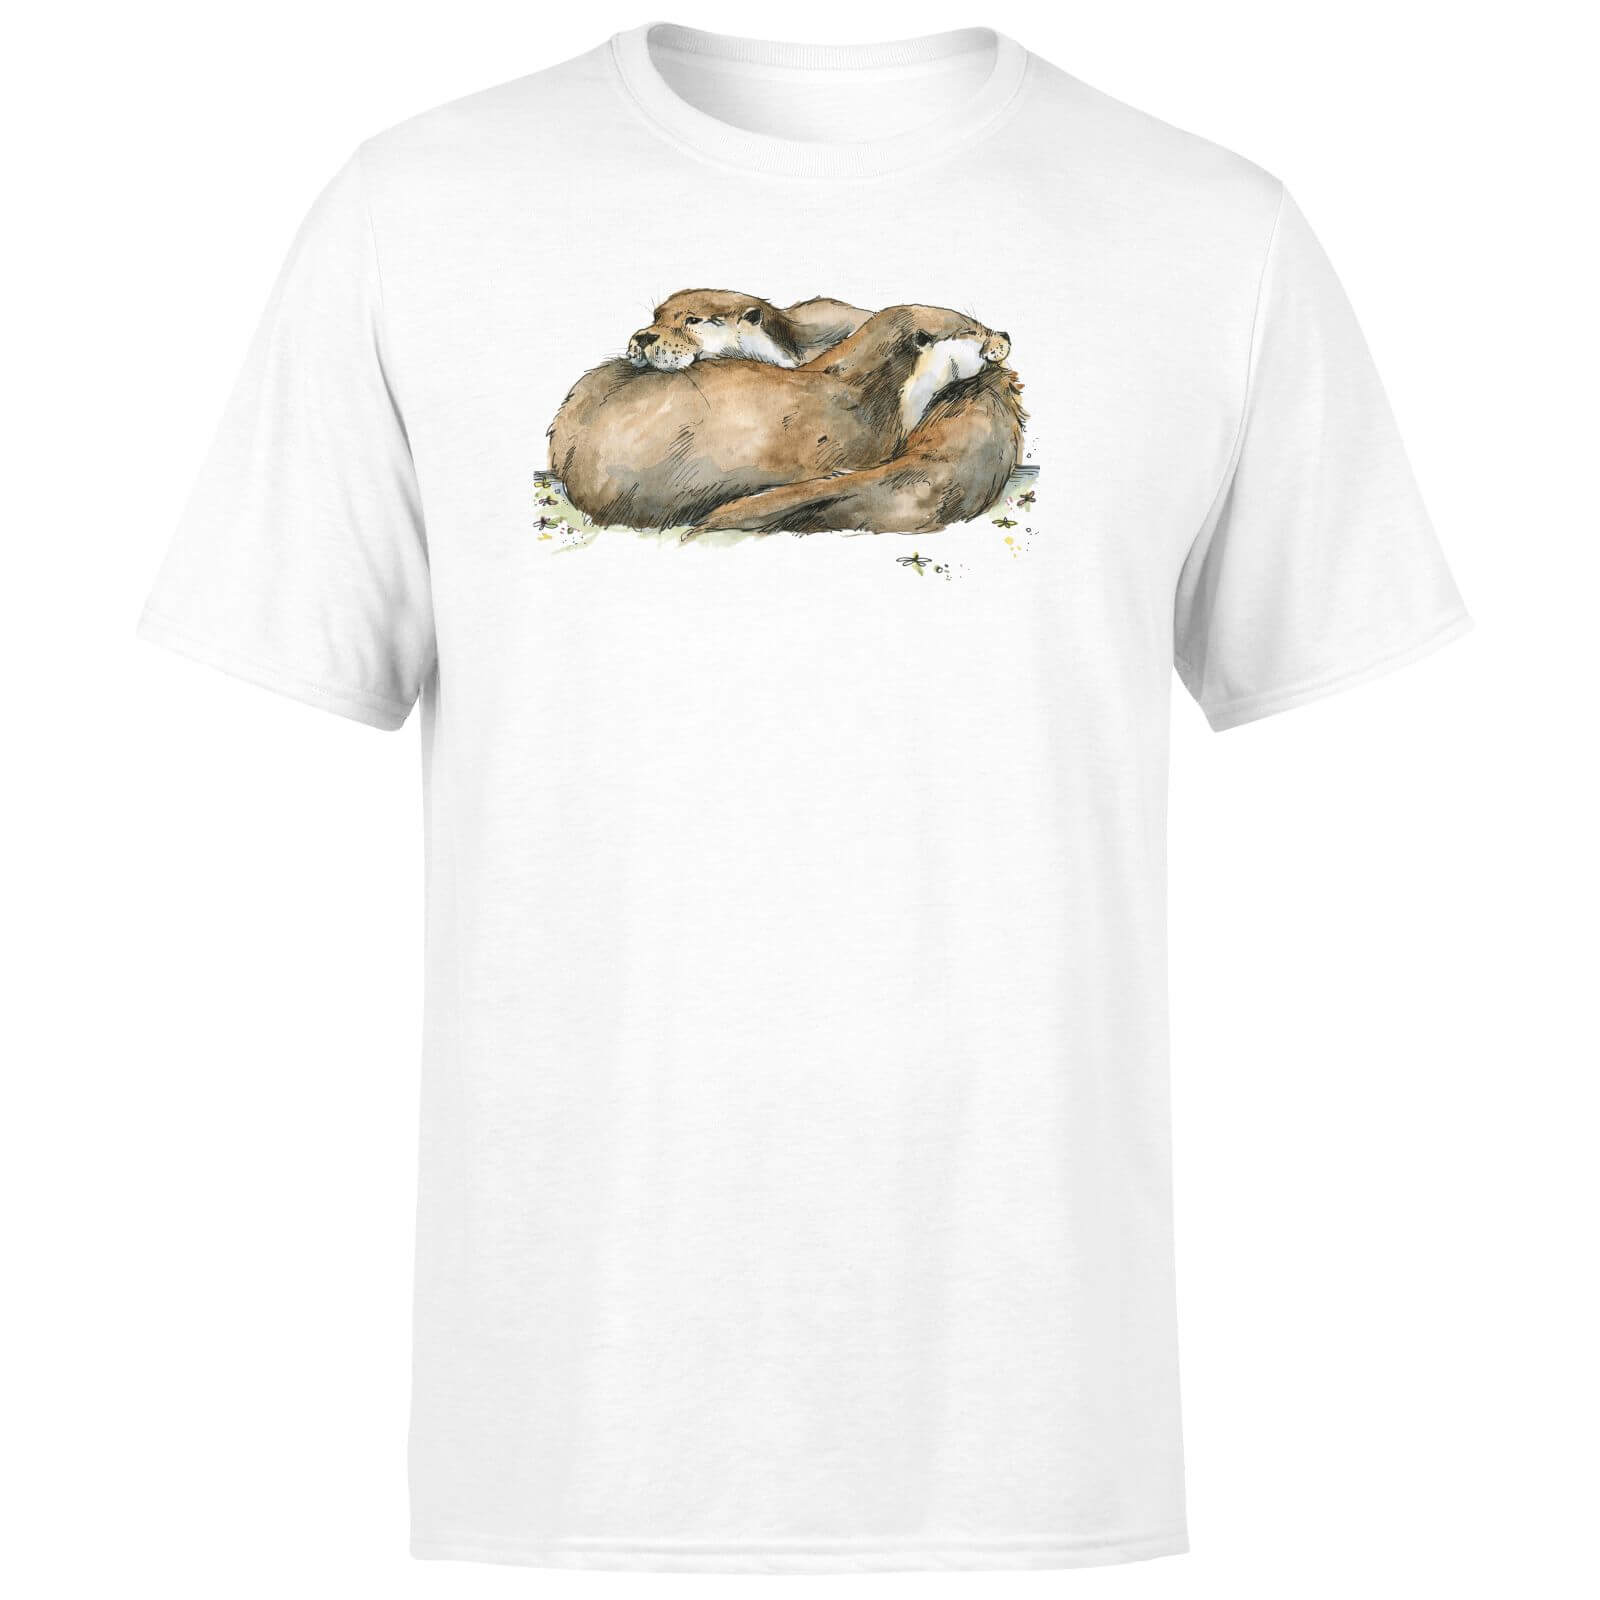 Snowtap Otters Men's T-Shirt - White - XS - White